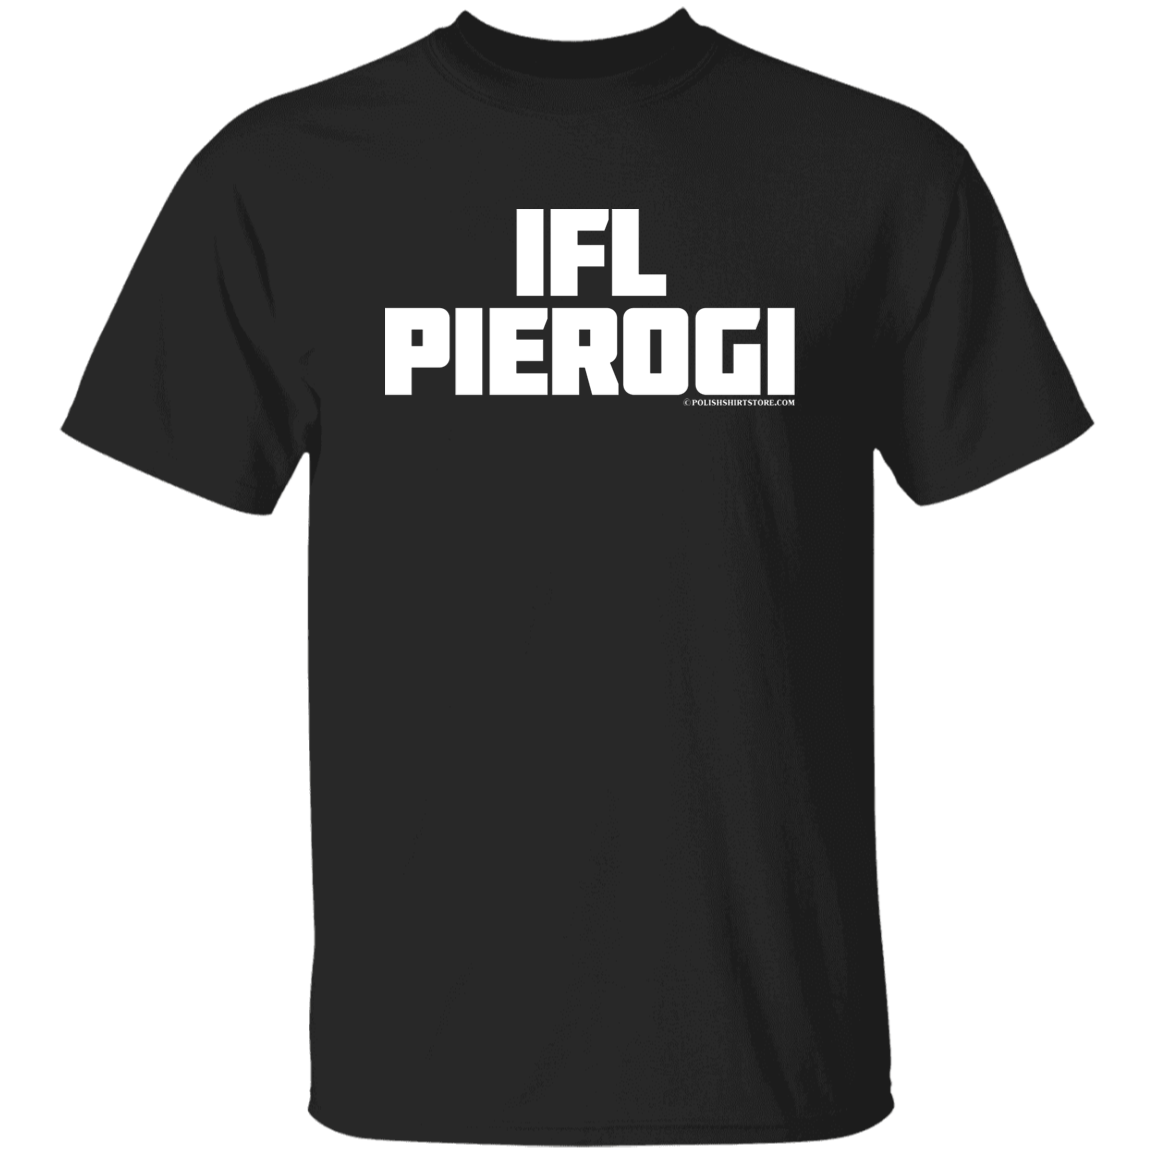 IFL Pierogi Apparel CustomCat G500 5.3 oz. T-Shirt Black S